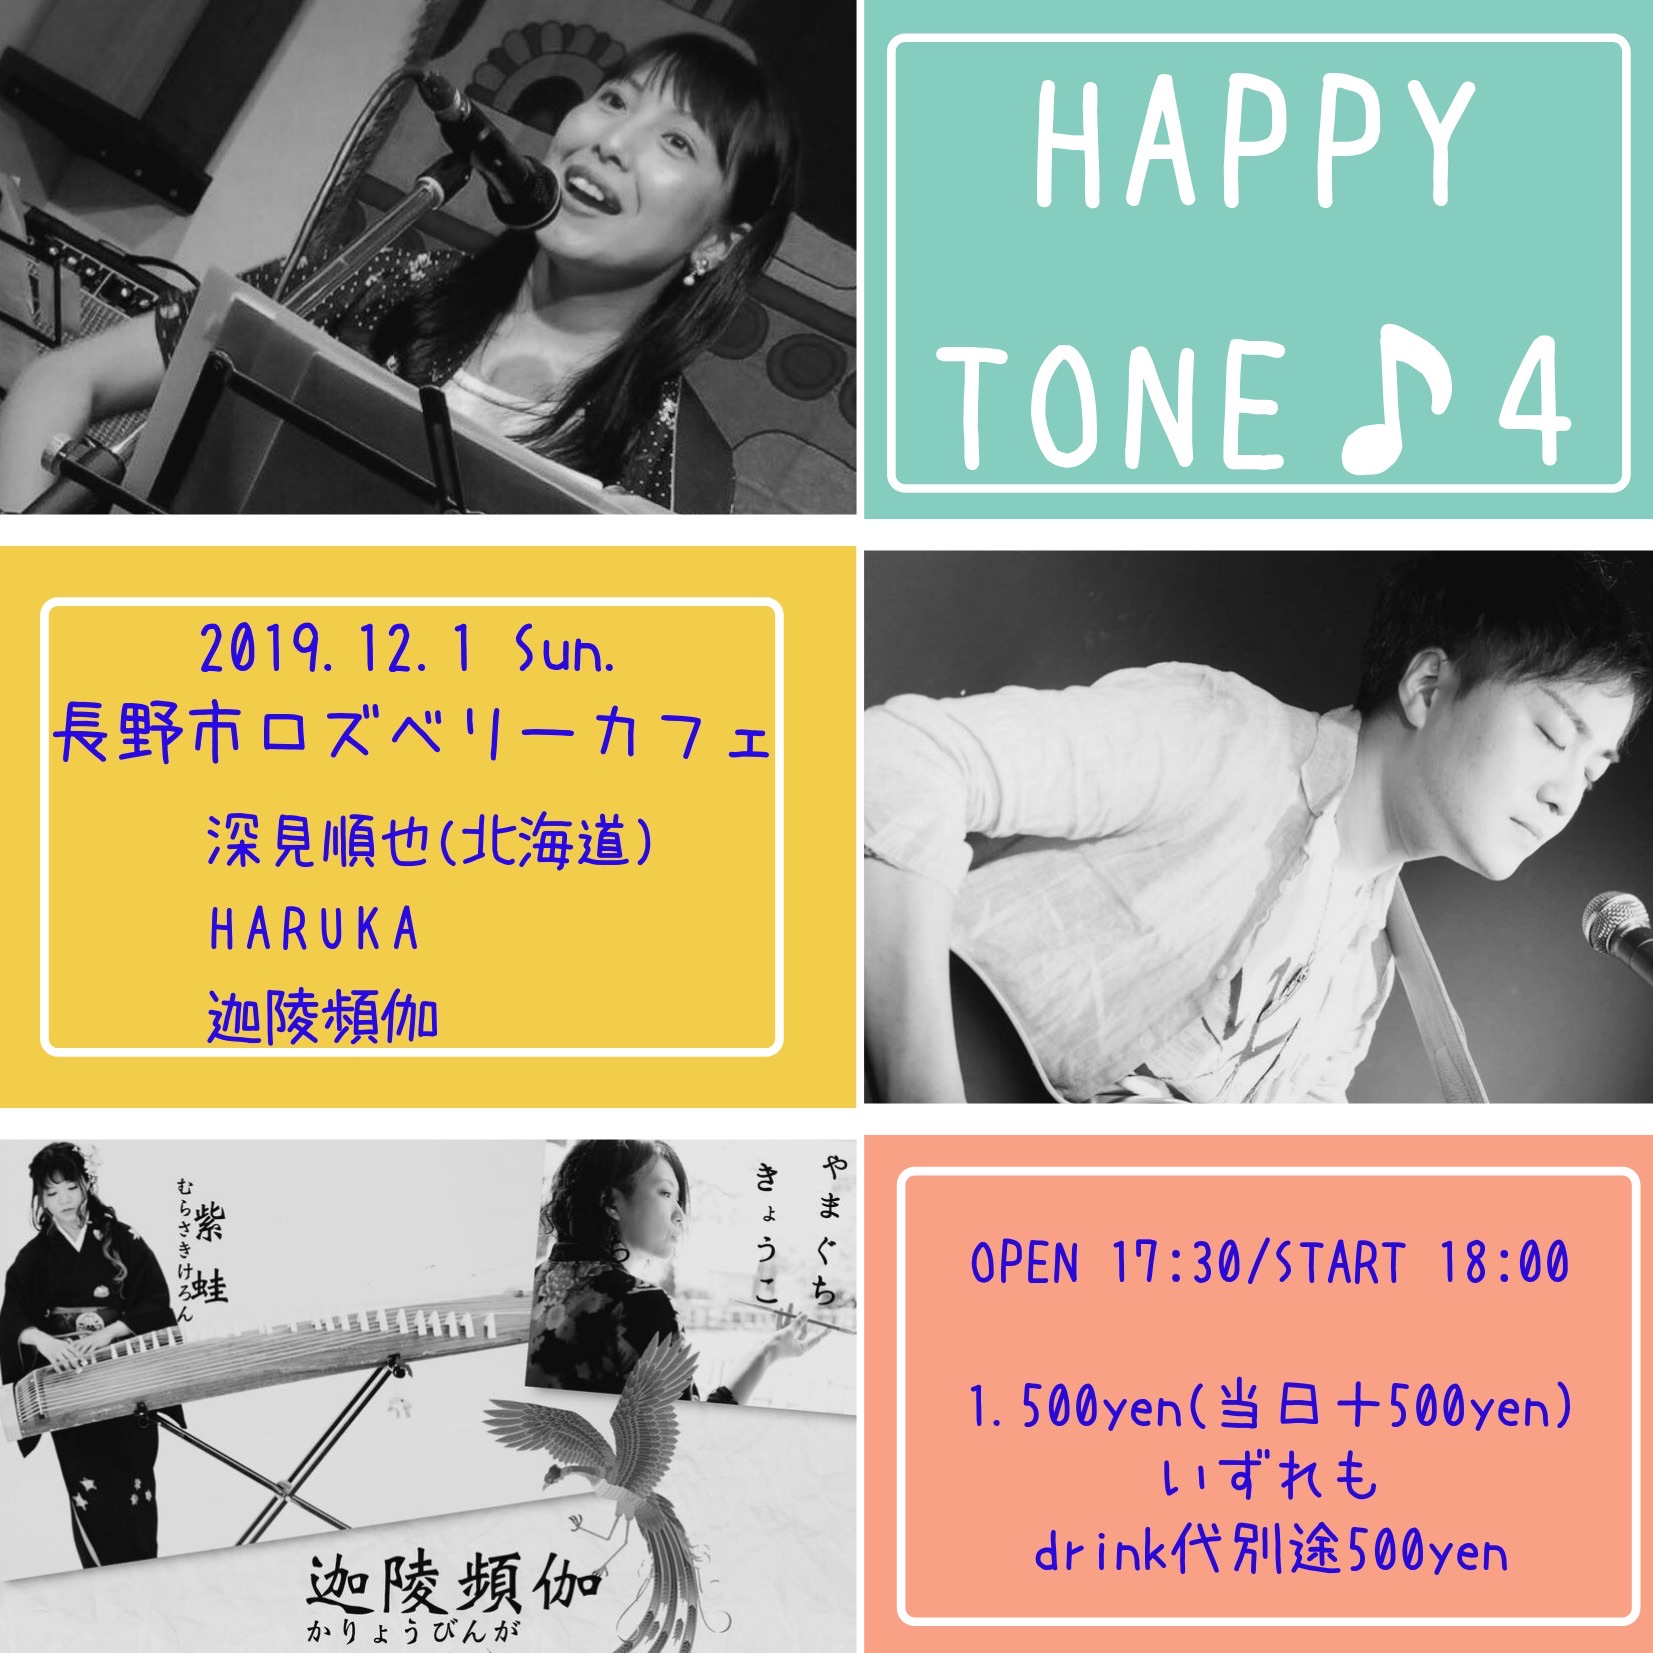 HAPPY TONE ♪ 4